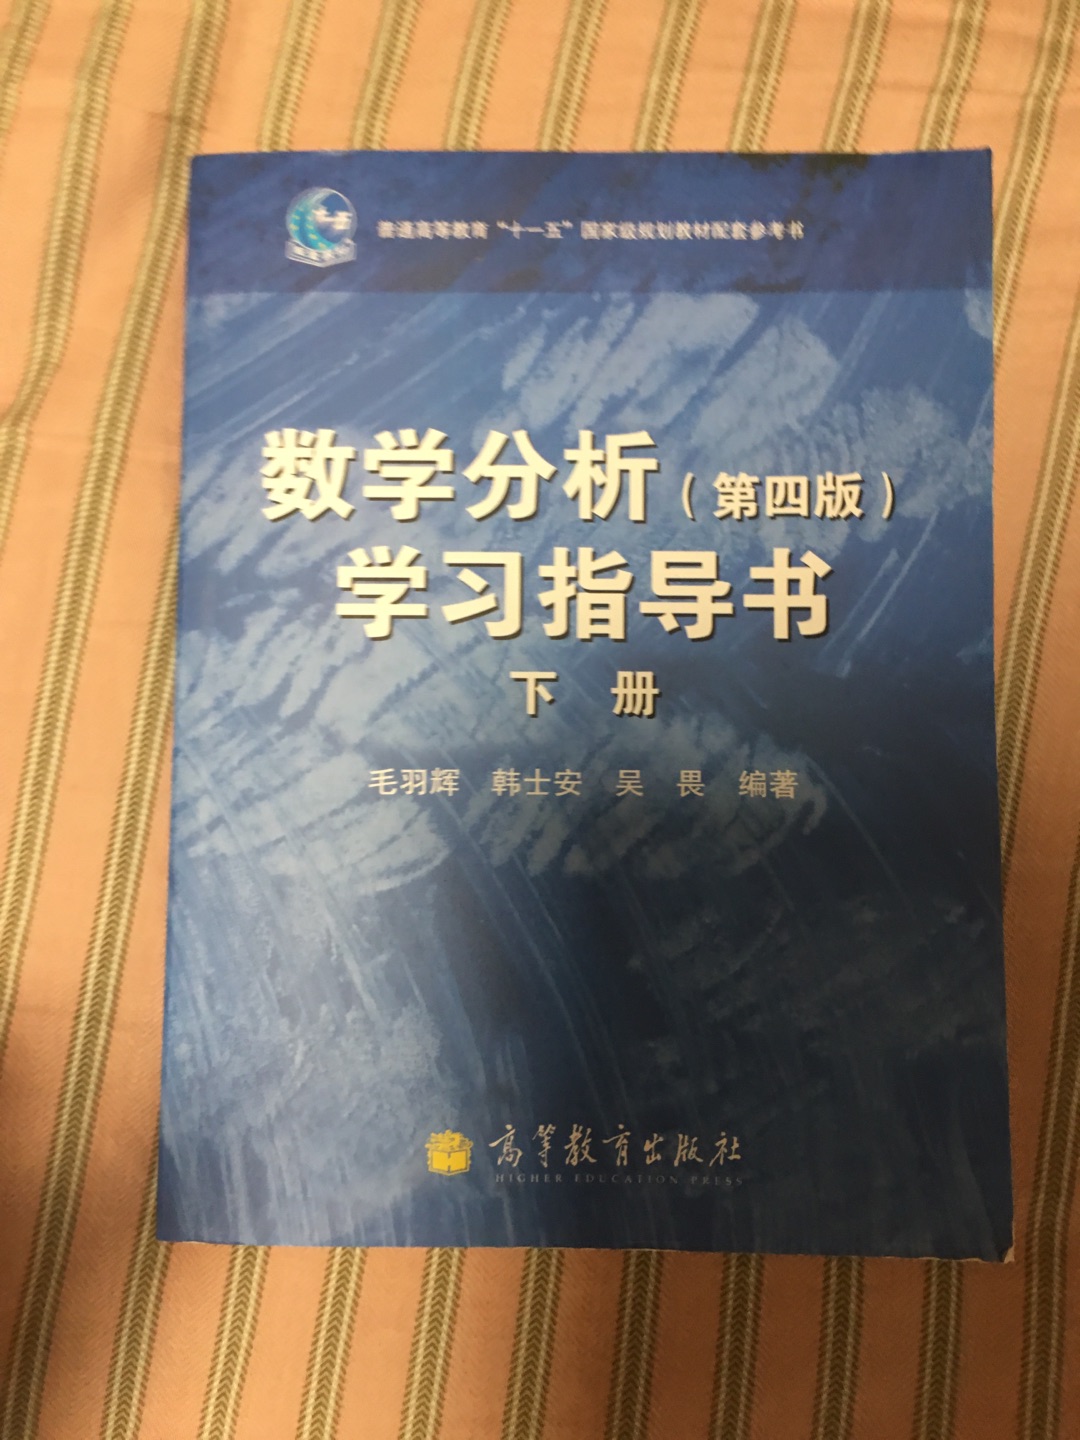 这书配合华东师范大学的数学分析，很好用。